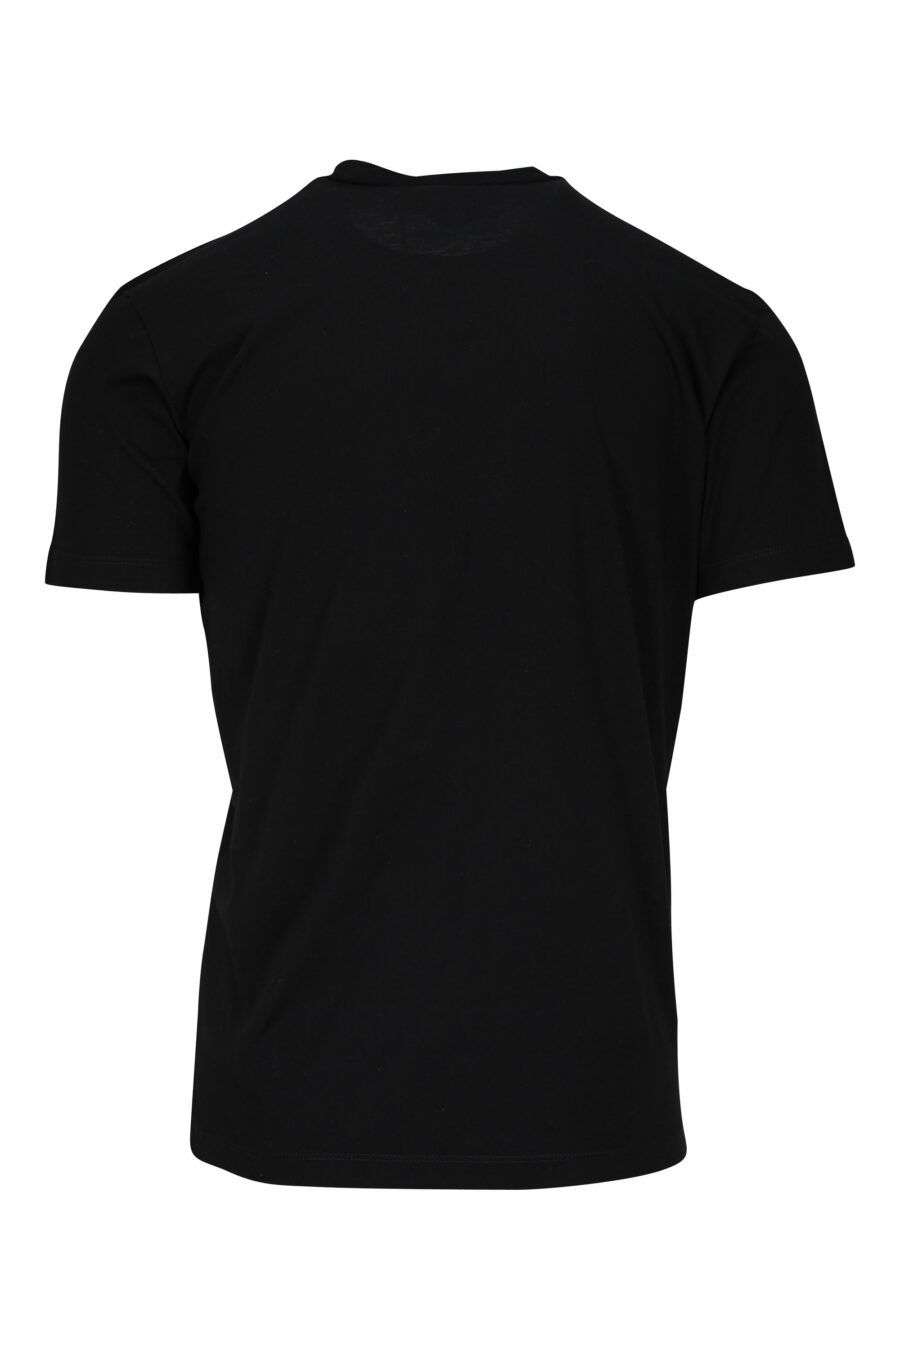 T-shirt noir avec maxilogo rgb - 8052134941157 1